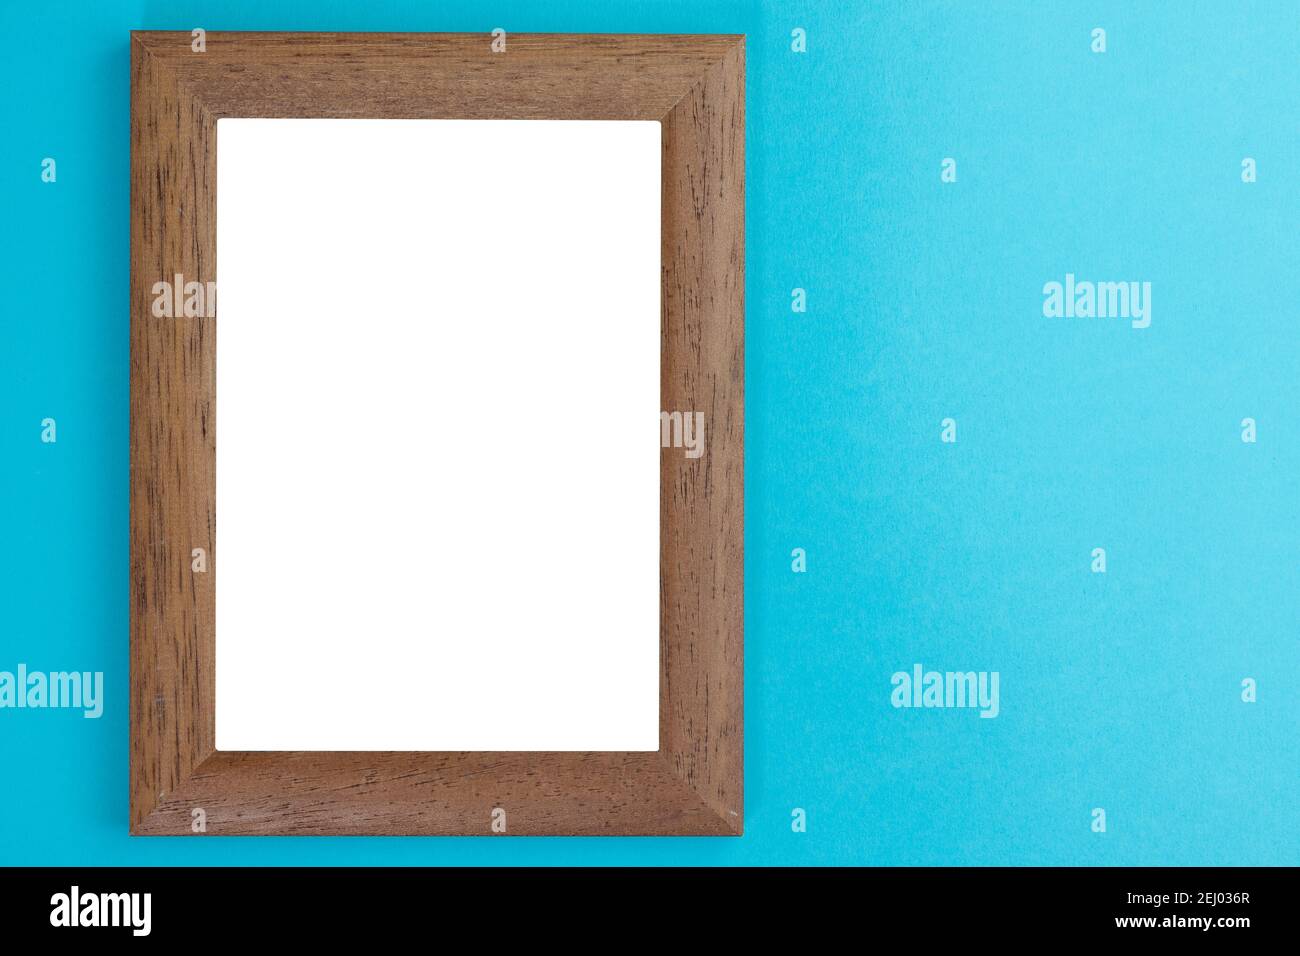 Bilderrahmen aus Holz mit weißem Innenraum an hellblauer Wand  Stockfotografie - Alamy